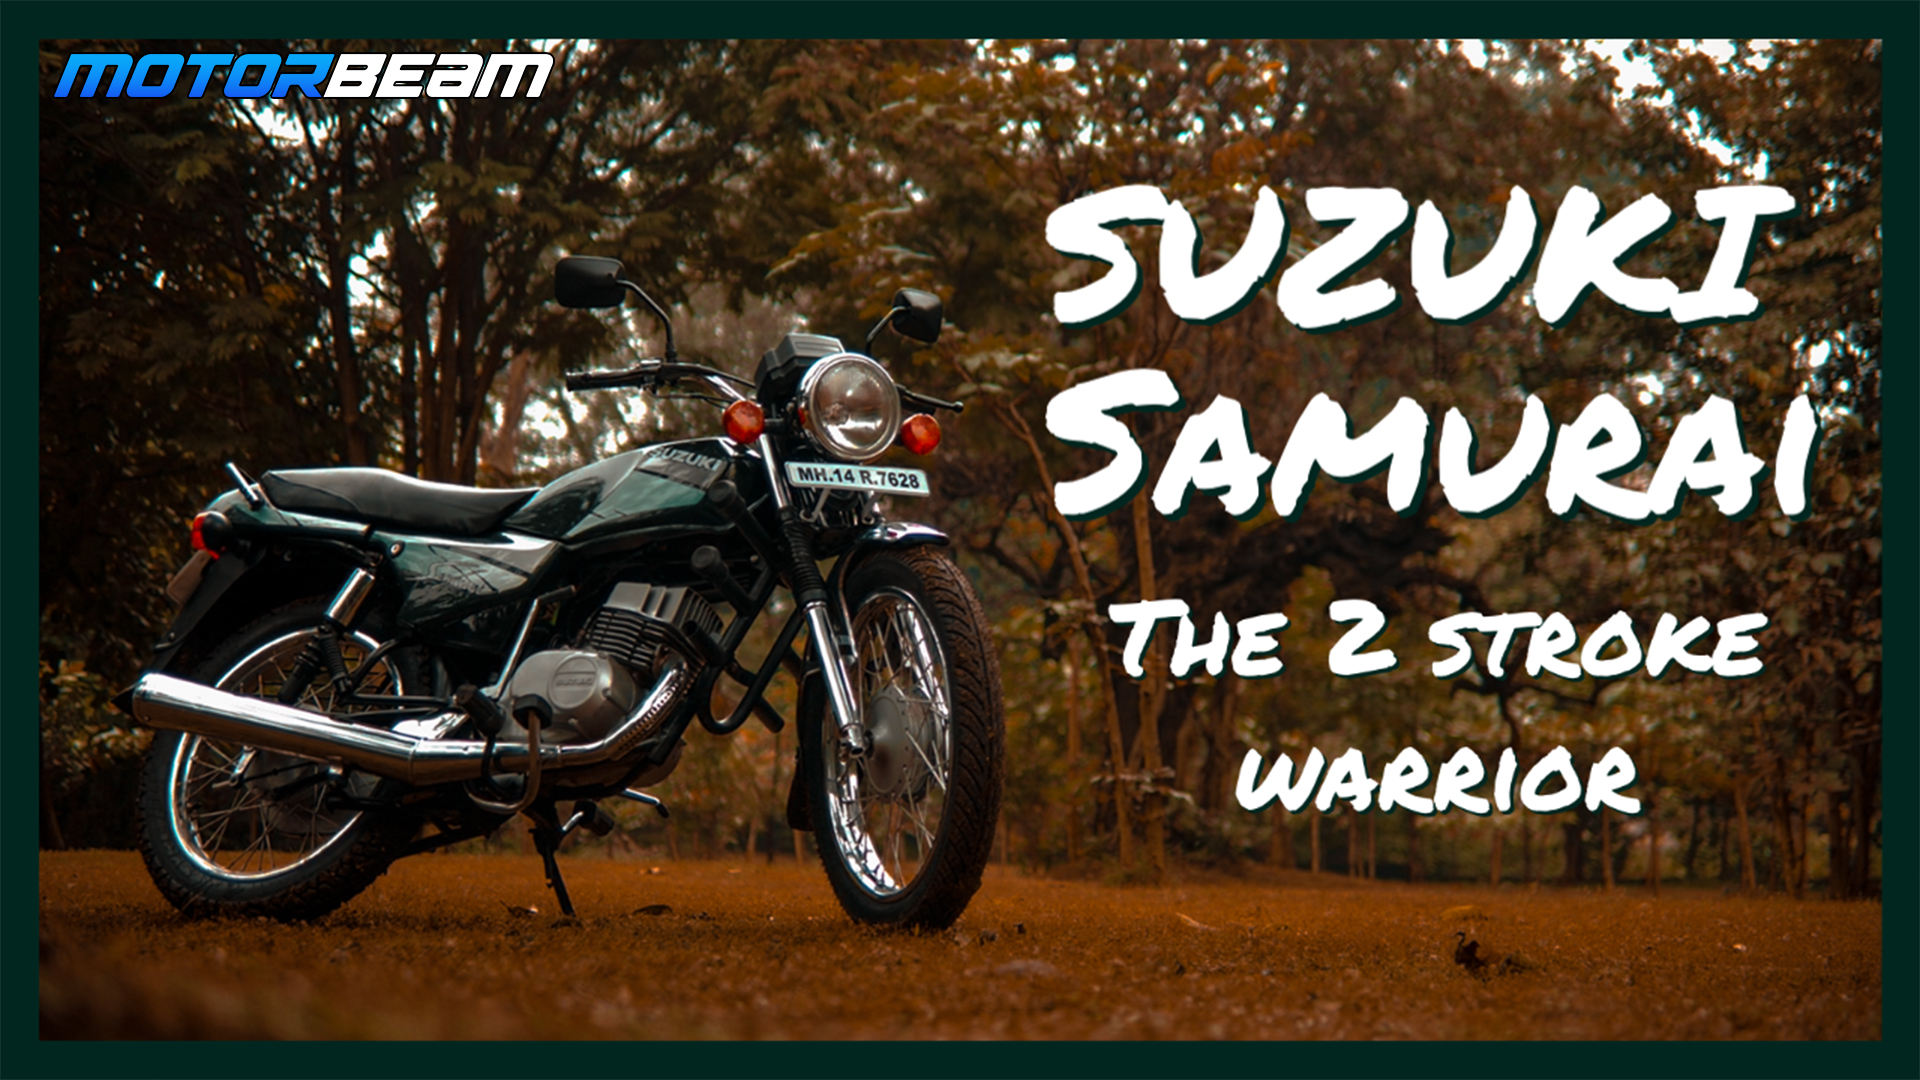 https://www.motorbeam.com/wp-content/uploads/Suzuki-Samurai-Ownership-Video.jpg